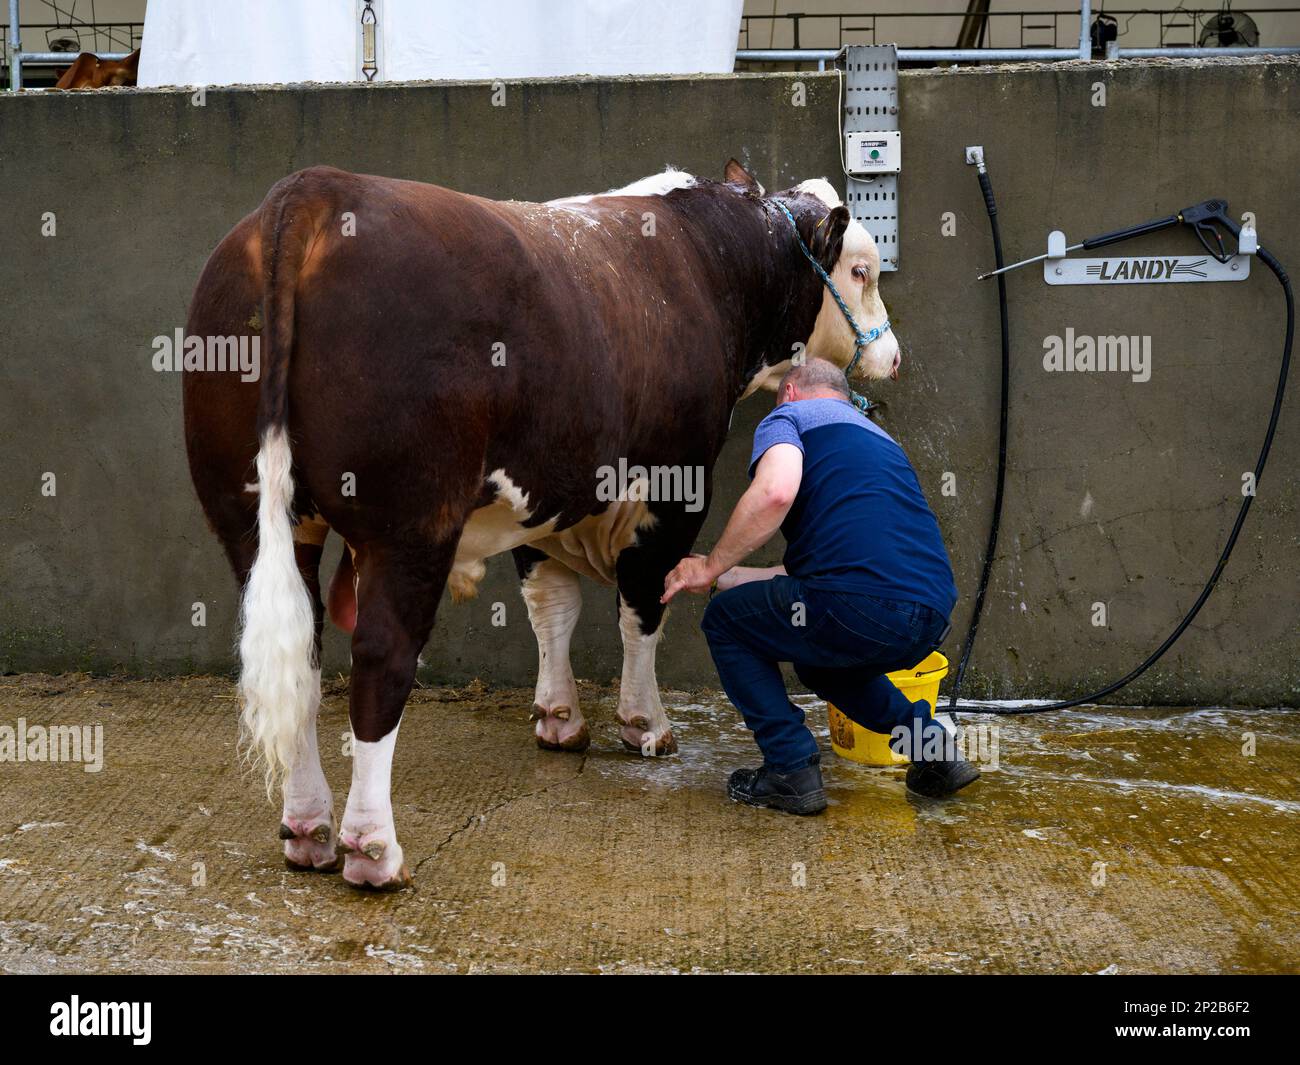 Männlicher Bauer wäscht einen roten, weißen Hereford-Stier, der im Rinderwaschbecken steht, macht das Tier bereit (Seifenwasser) - Great Yorkshire Show, Harrogate, England, Großbritannien. Stockfoto